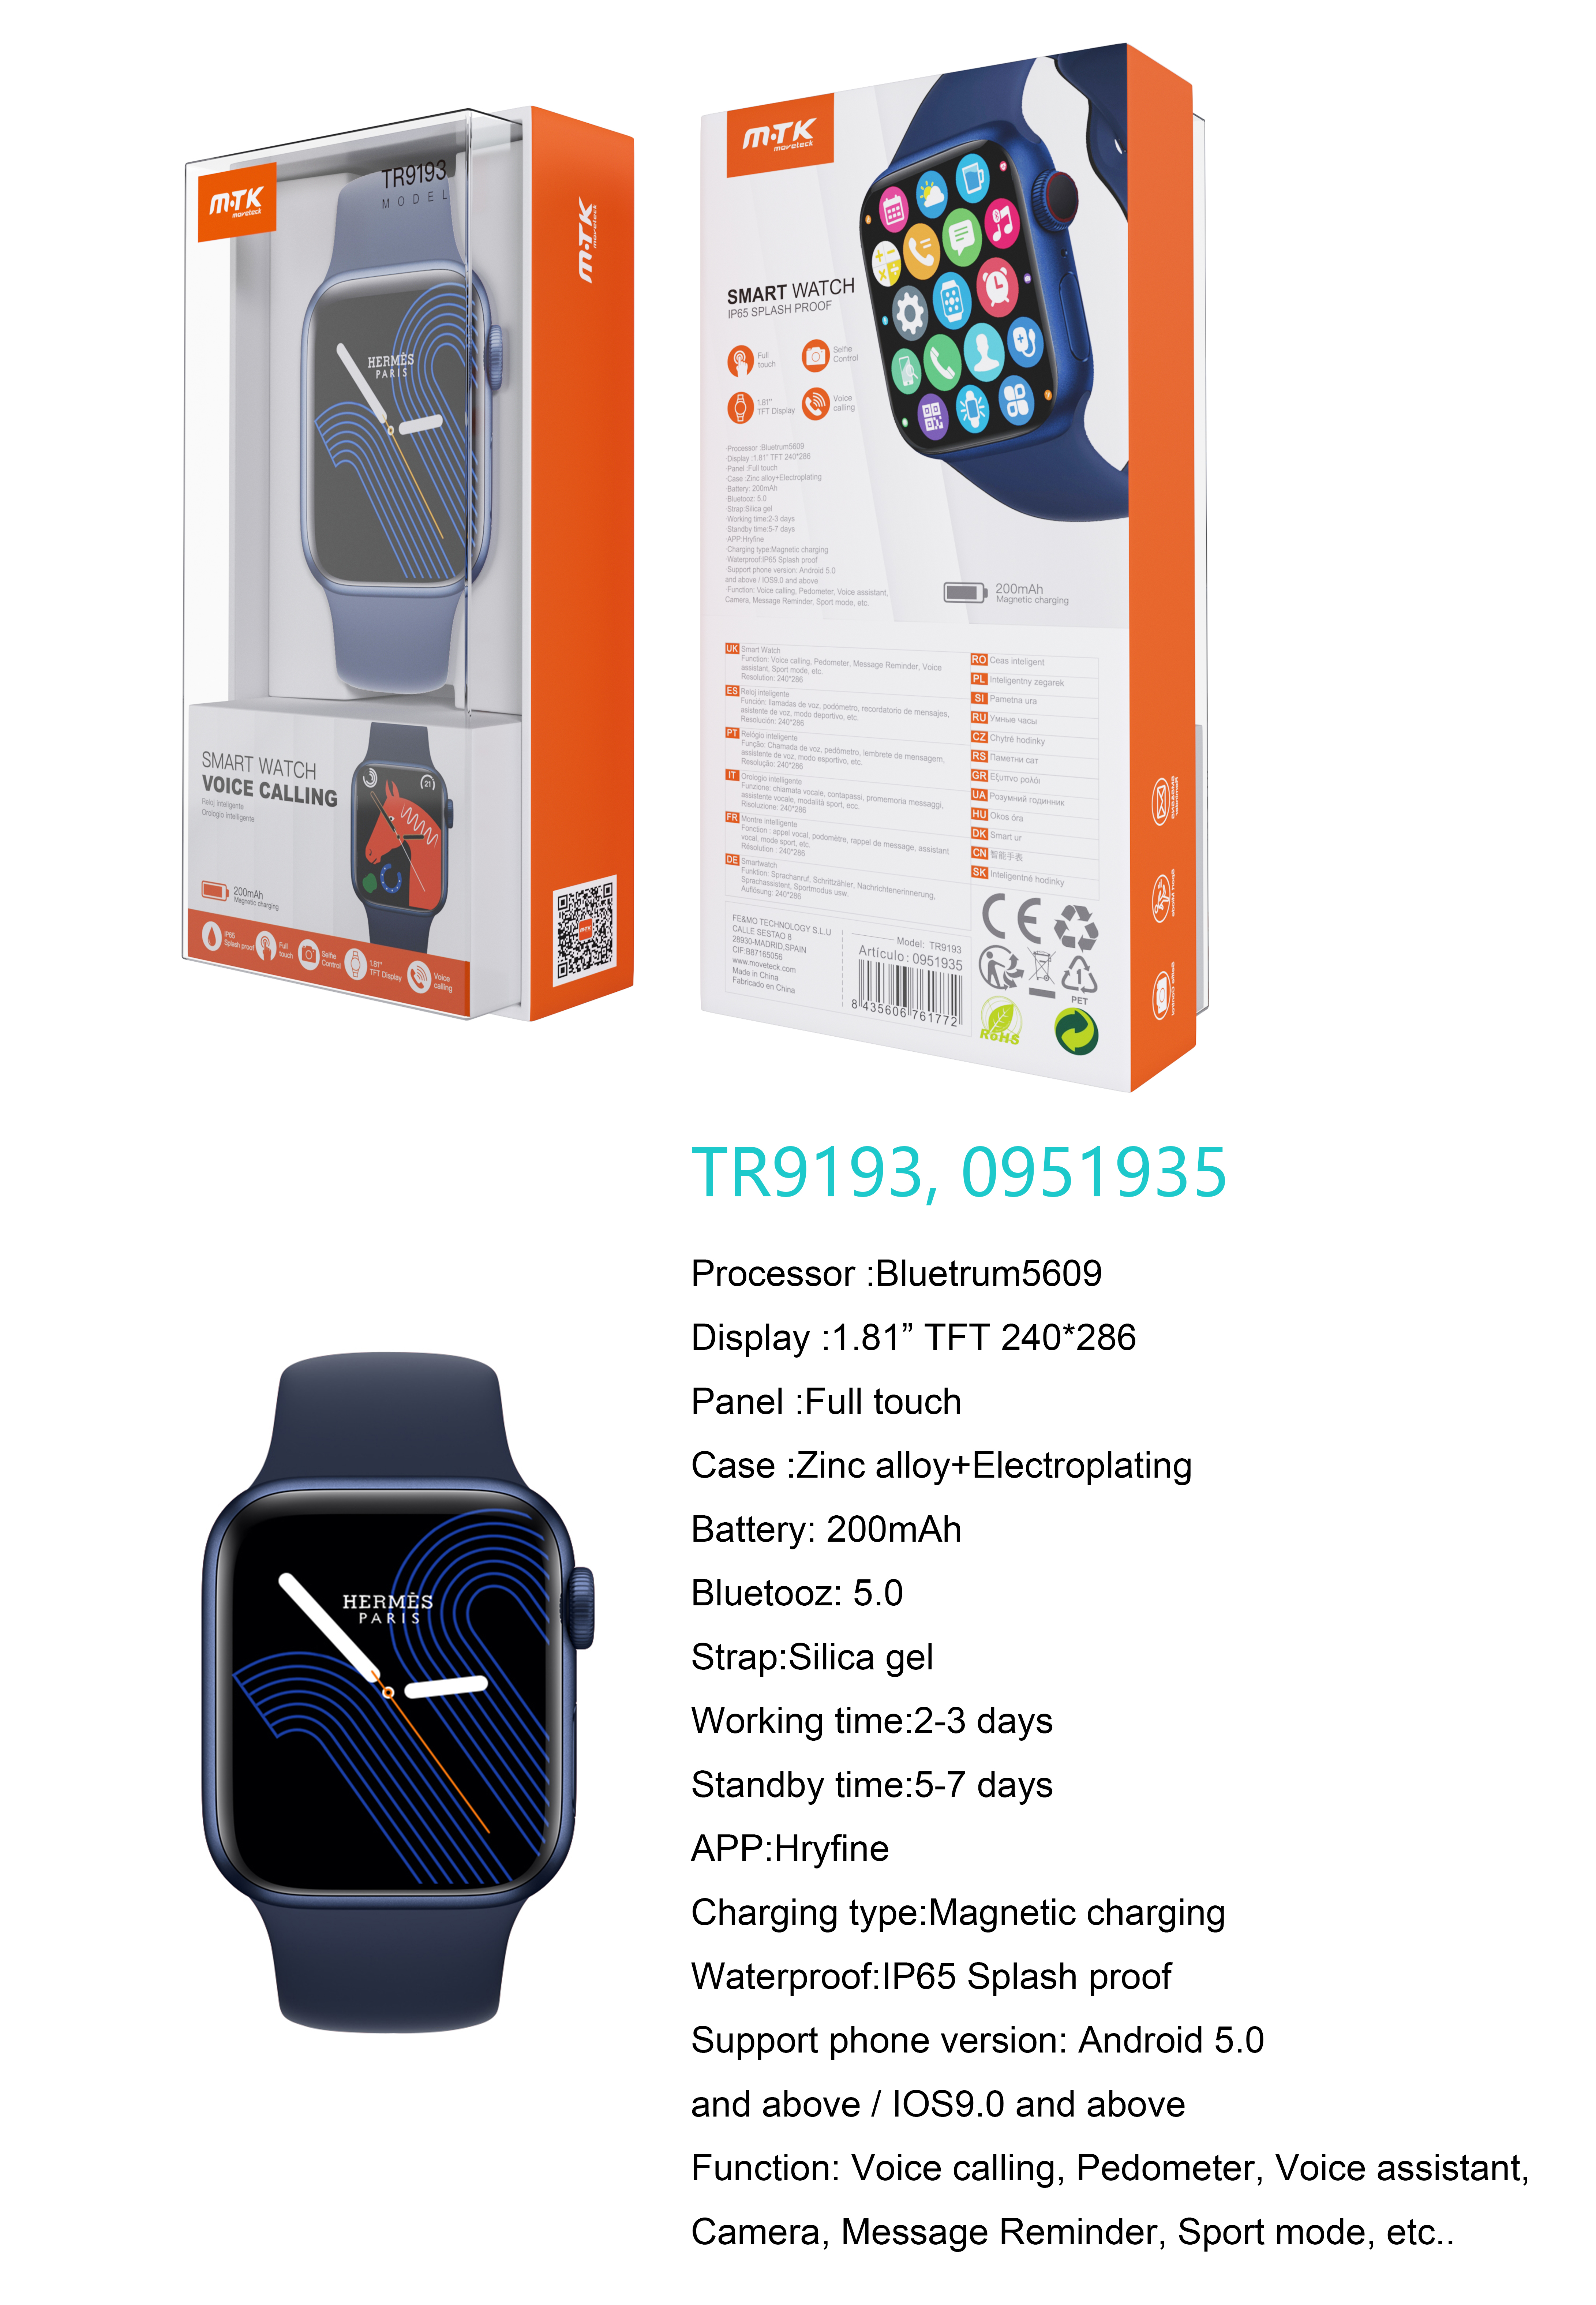 TR9193 AZ Reloj Inteligente con bluetooth 5.0, Pantalla tactil de 1.81 pulgadas, Soporta llemadas, Asistente de Voz,Impermeable IP65, Bateria 200mAh,